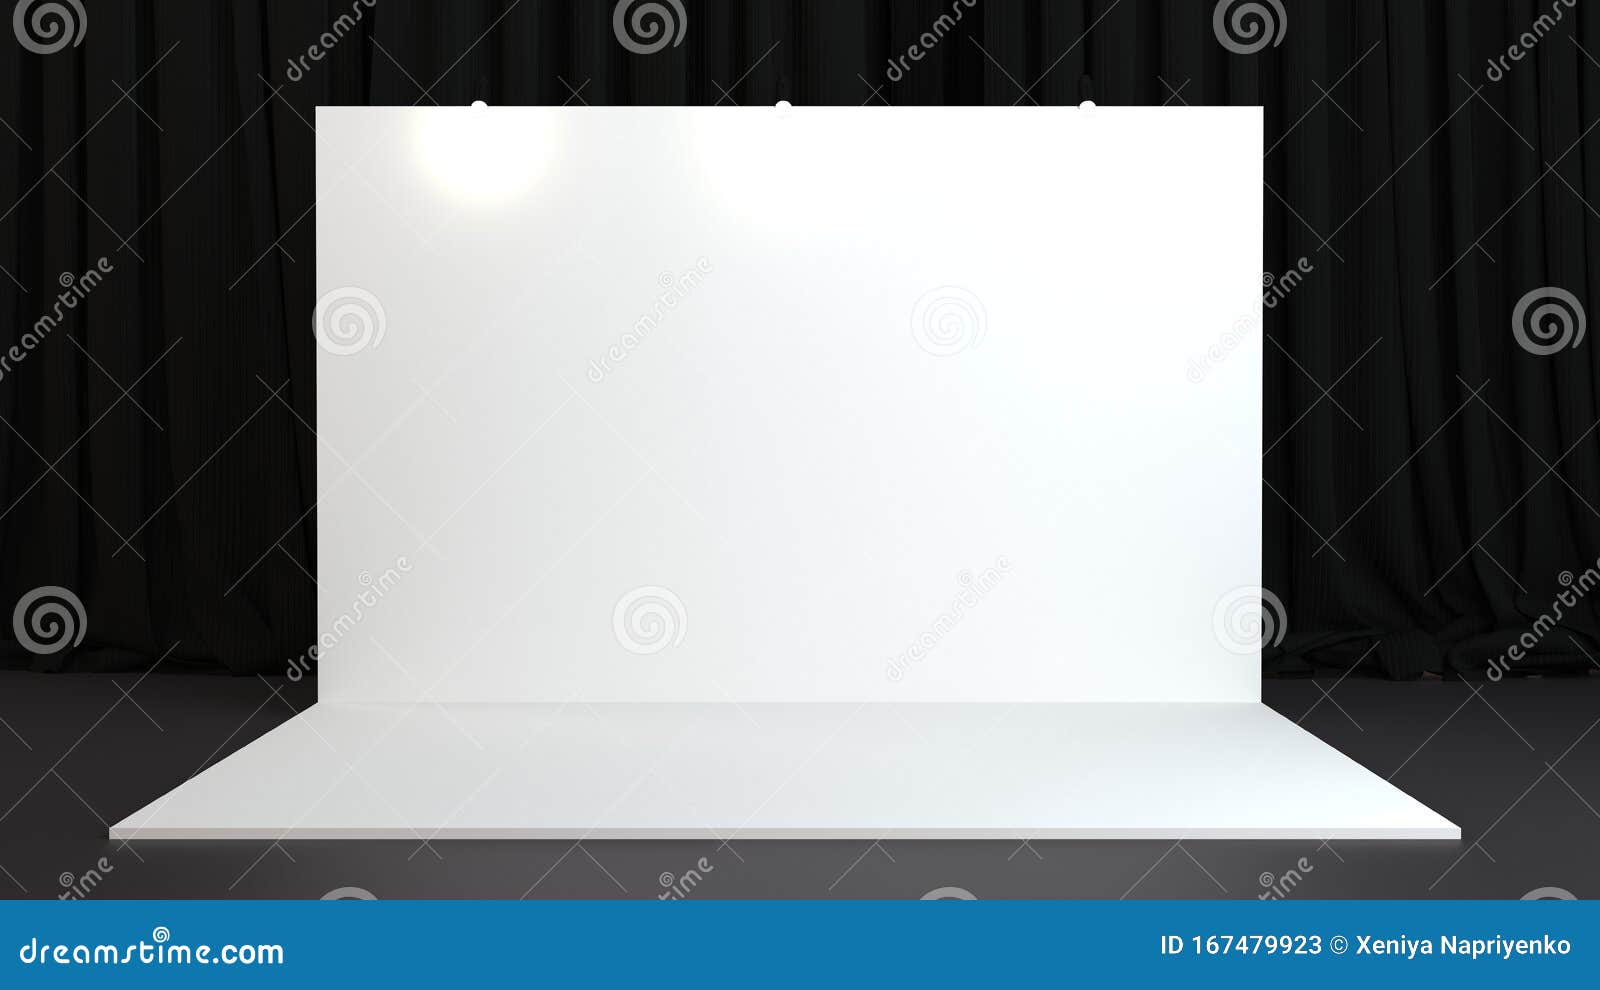 Download 3d Rendered Backdrop On Black Background With Curtains Mockup Stock Illustration Illustration Of Press Presentation 167479923